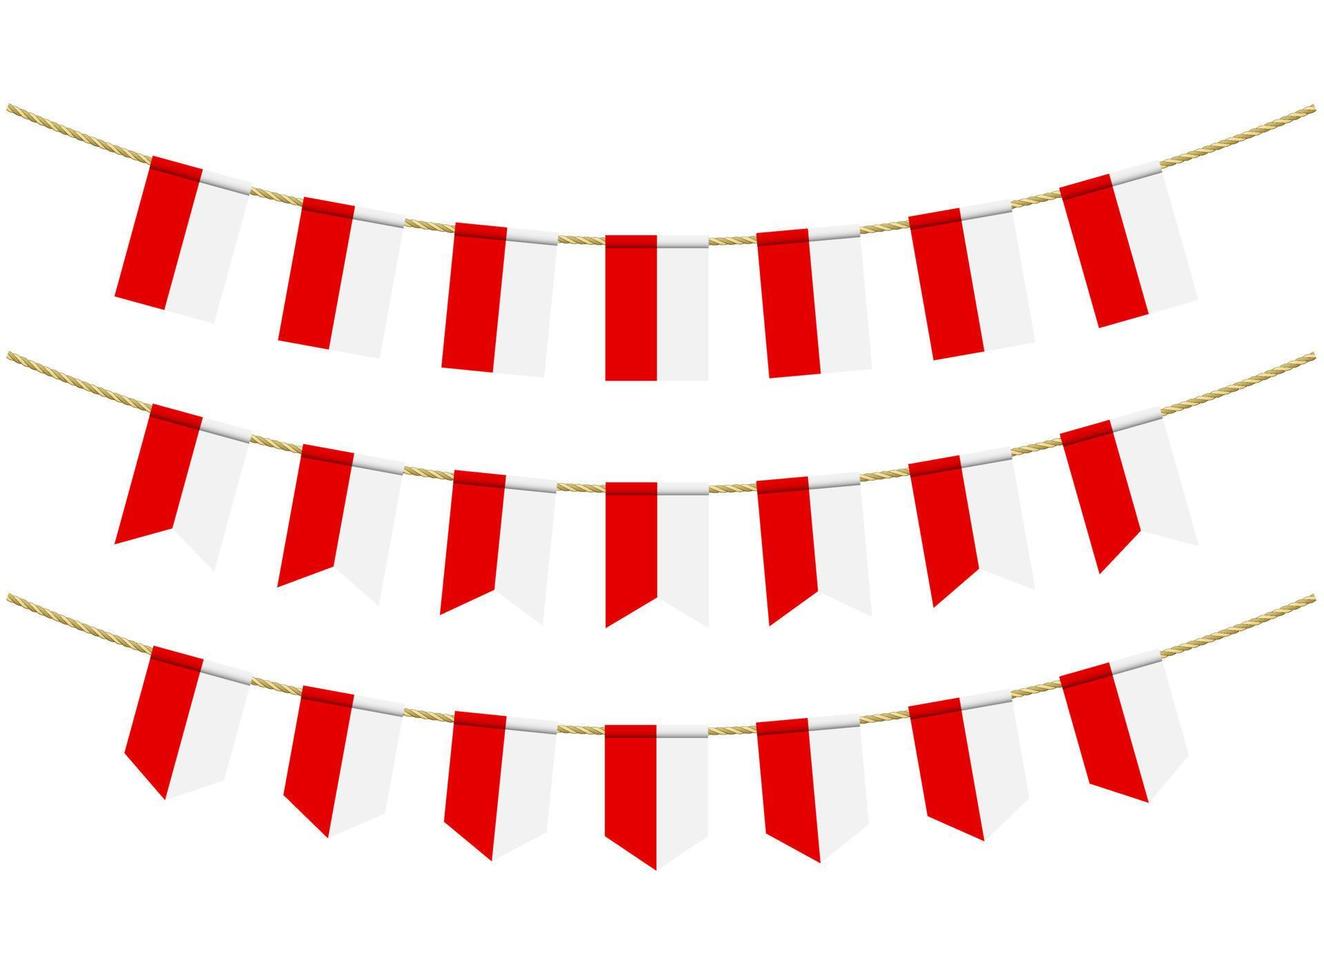 bandera de polonia en las cuerdas sobre fondo blanco. conjunto de banderas patrióticas del empavesado. decoración del empavesado de la bandera de polonia vector